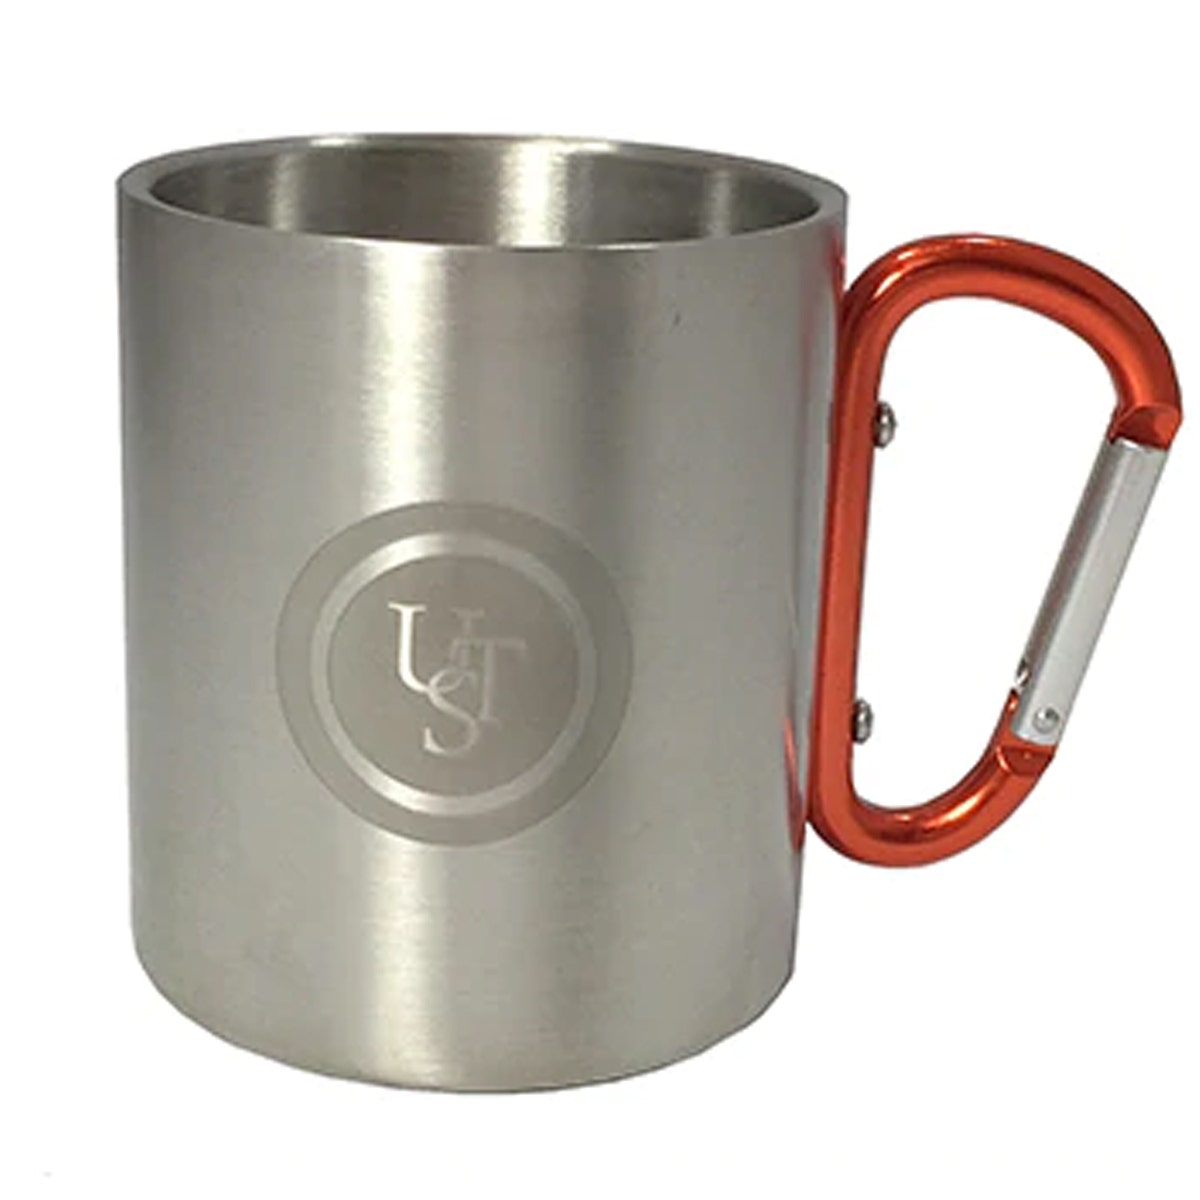 UST KLIPP Biner Mug 1.0 – Carabiner Handle Clips On For Carrying